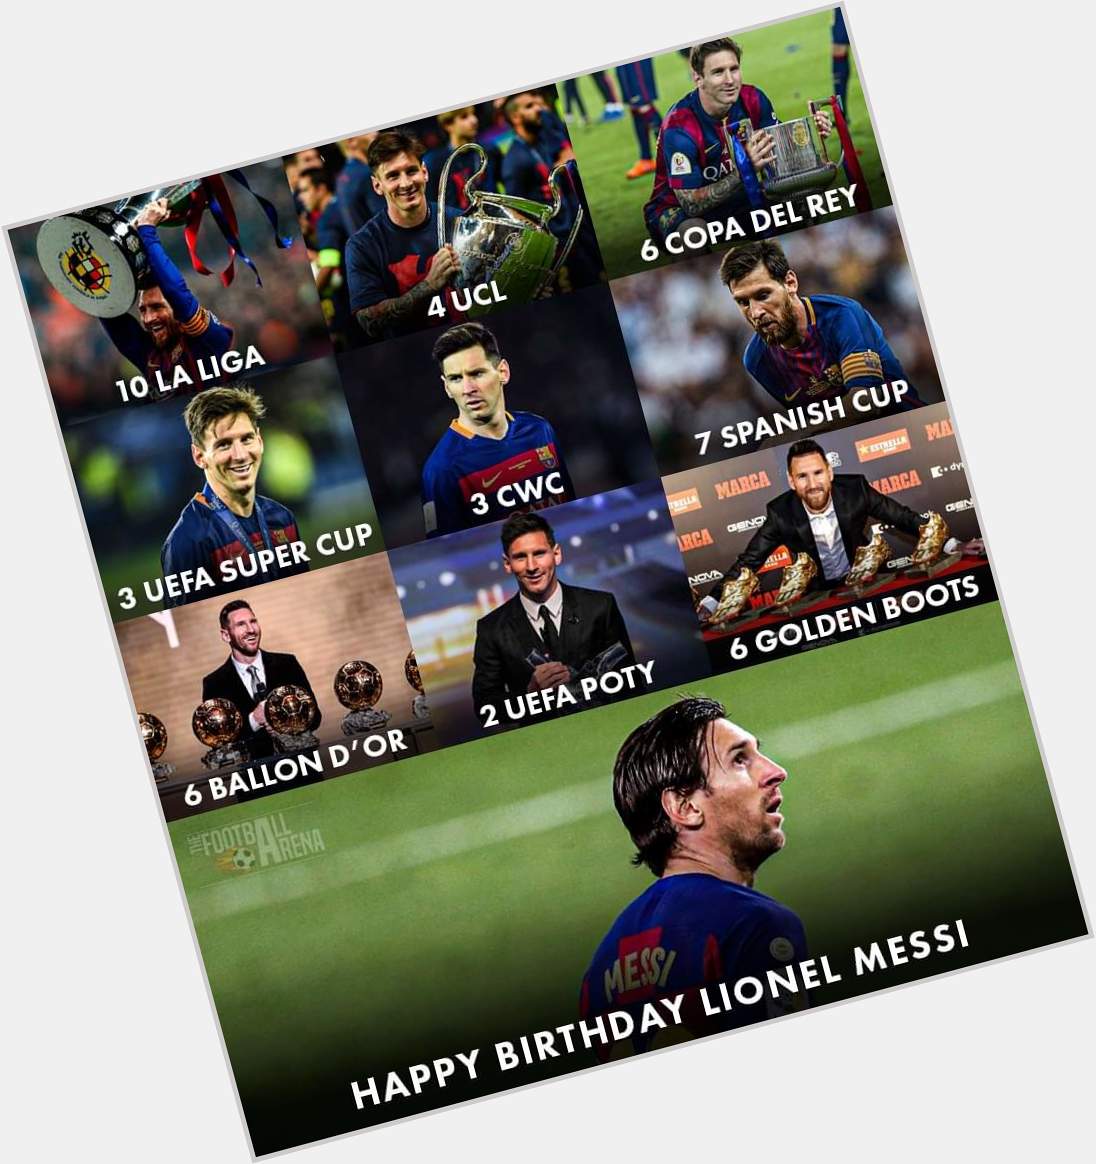 Happy Birthday Legend Lionel Messi   